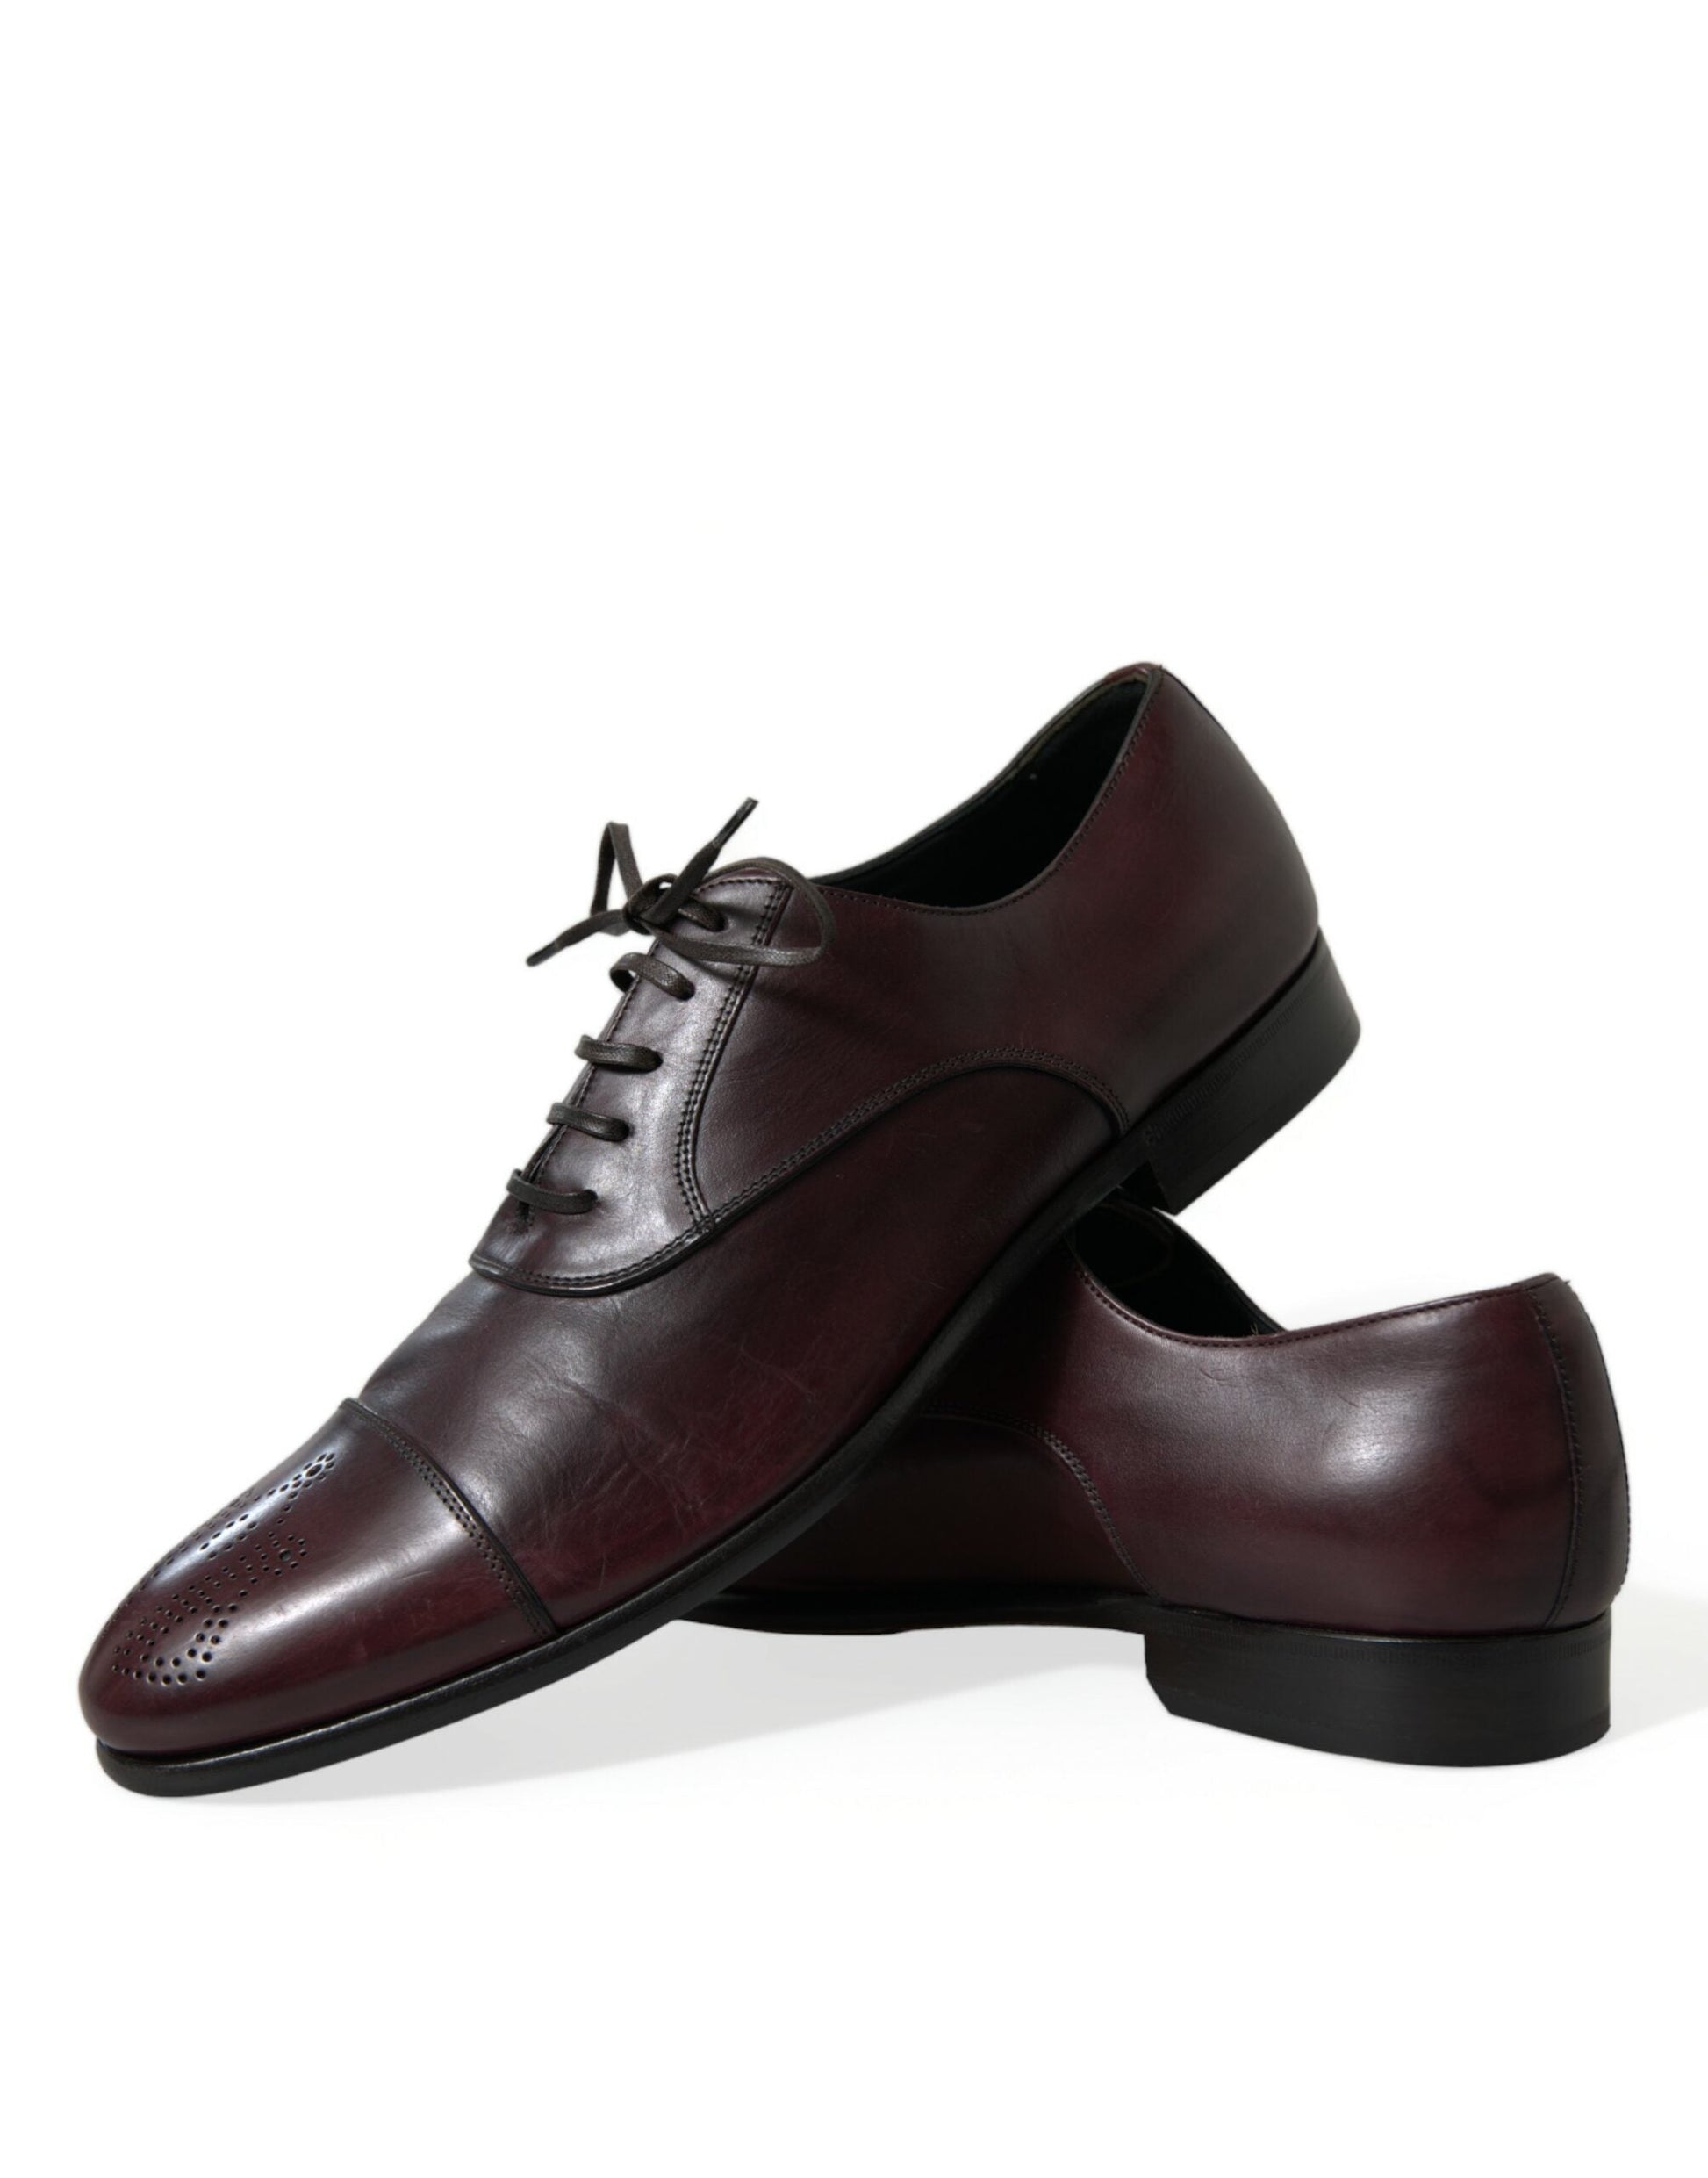 Fashionsarah.com Fashionsarah.com Dolce & Gabbana Bordeaux Leather Men Formal Derby Dress Shoes